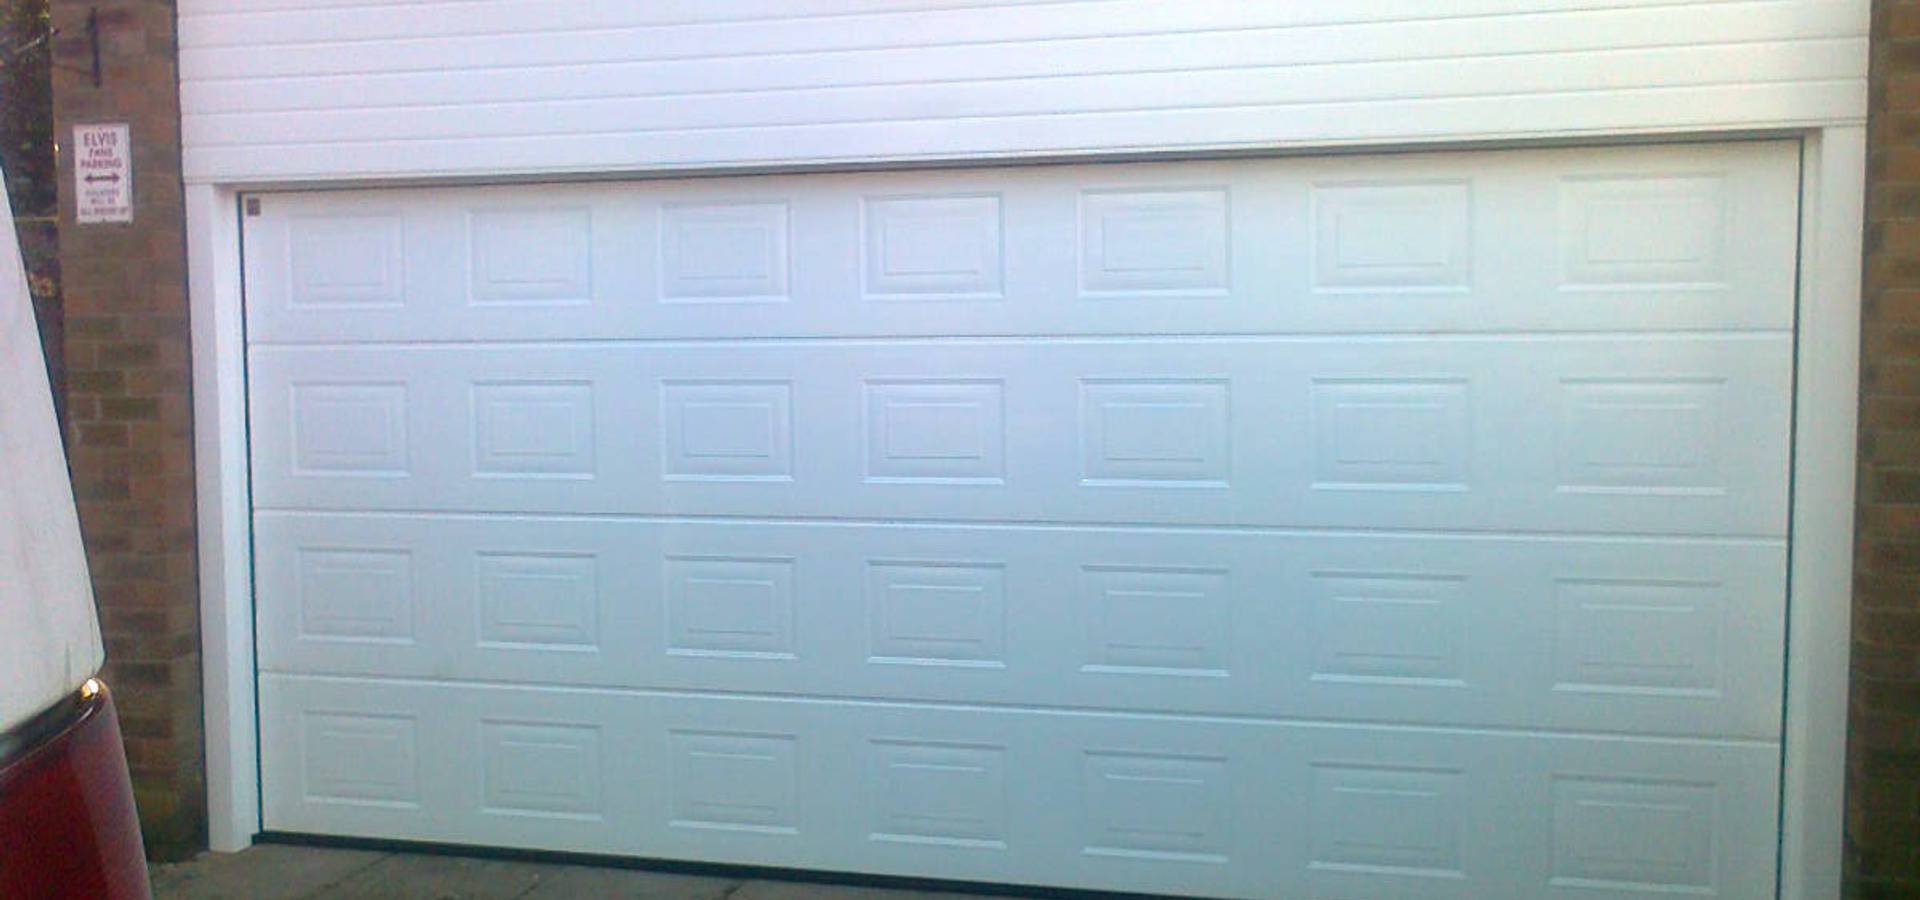 CBL Garage Doors